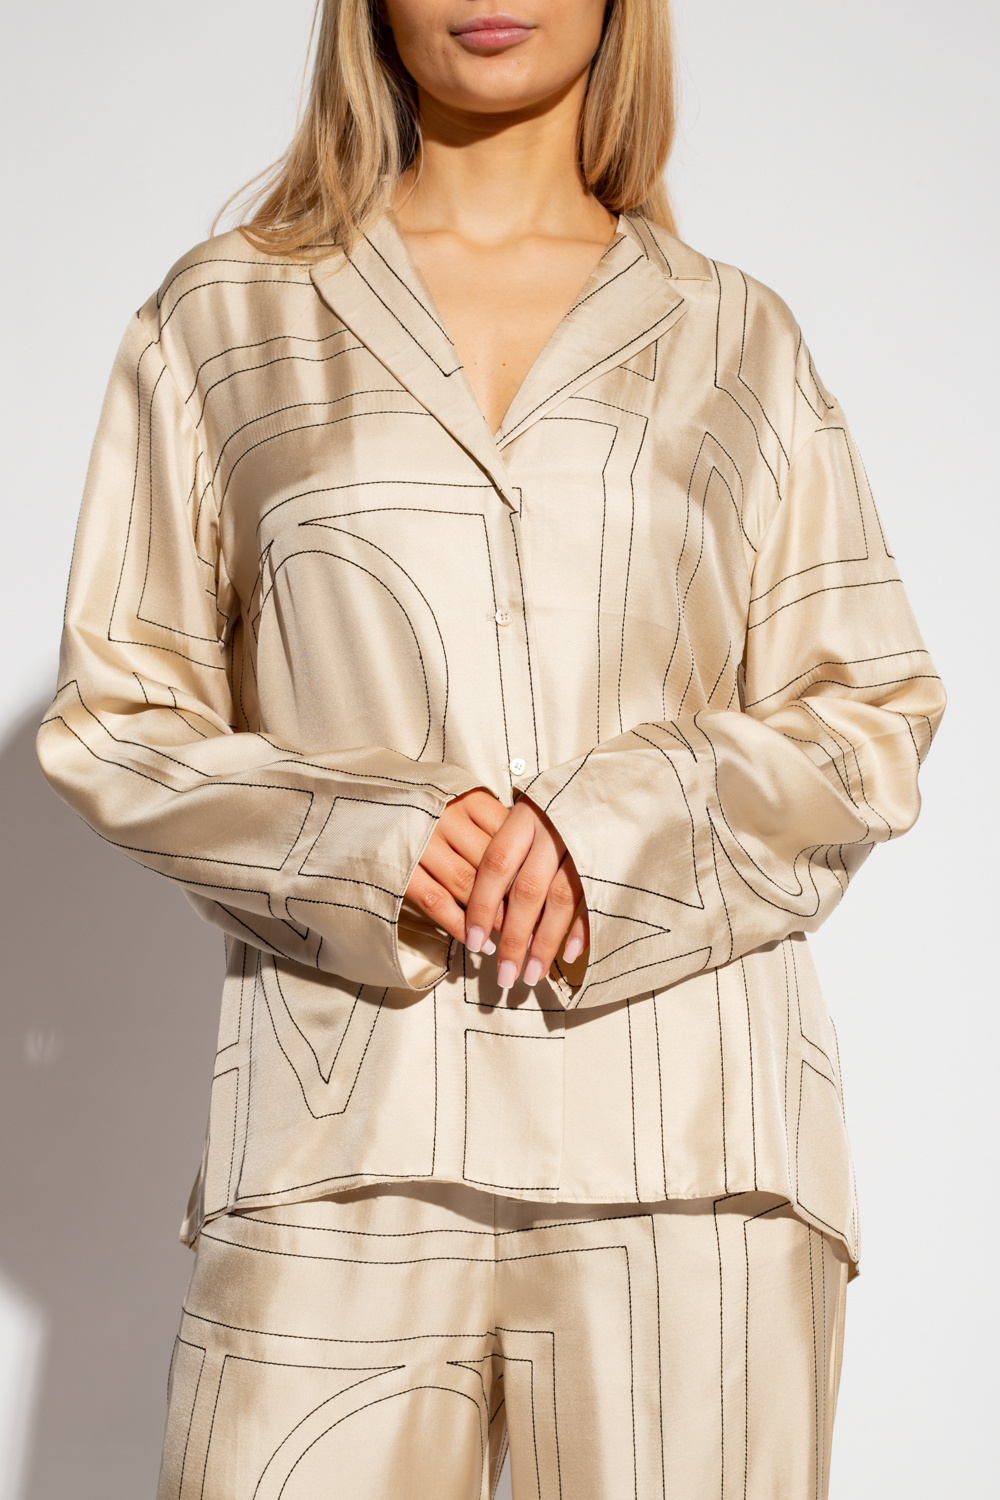 TOTEME Monogram Silk Pajama Top